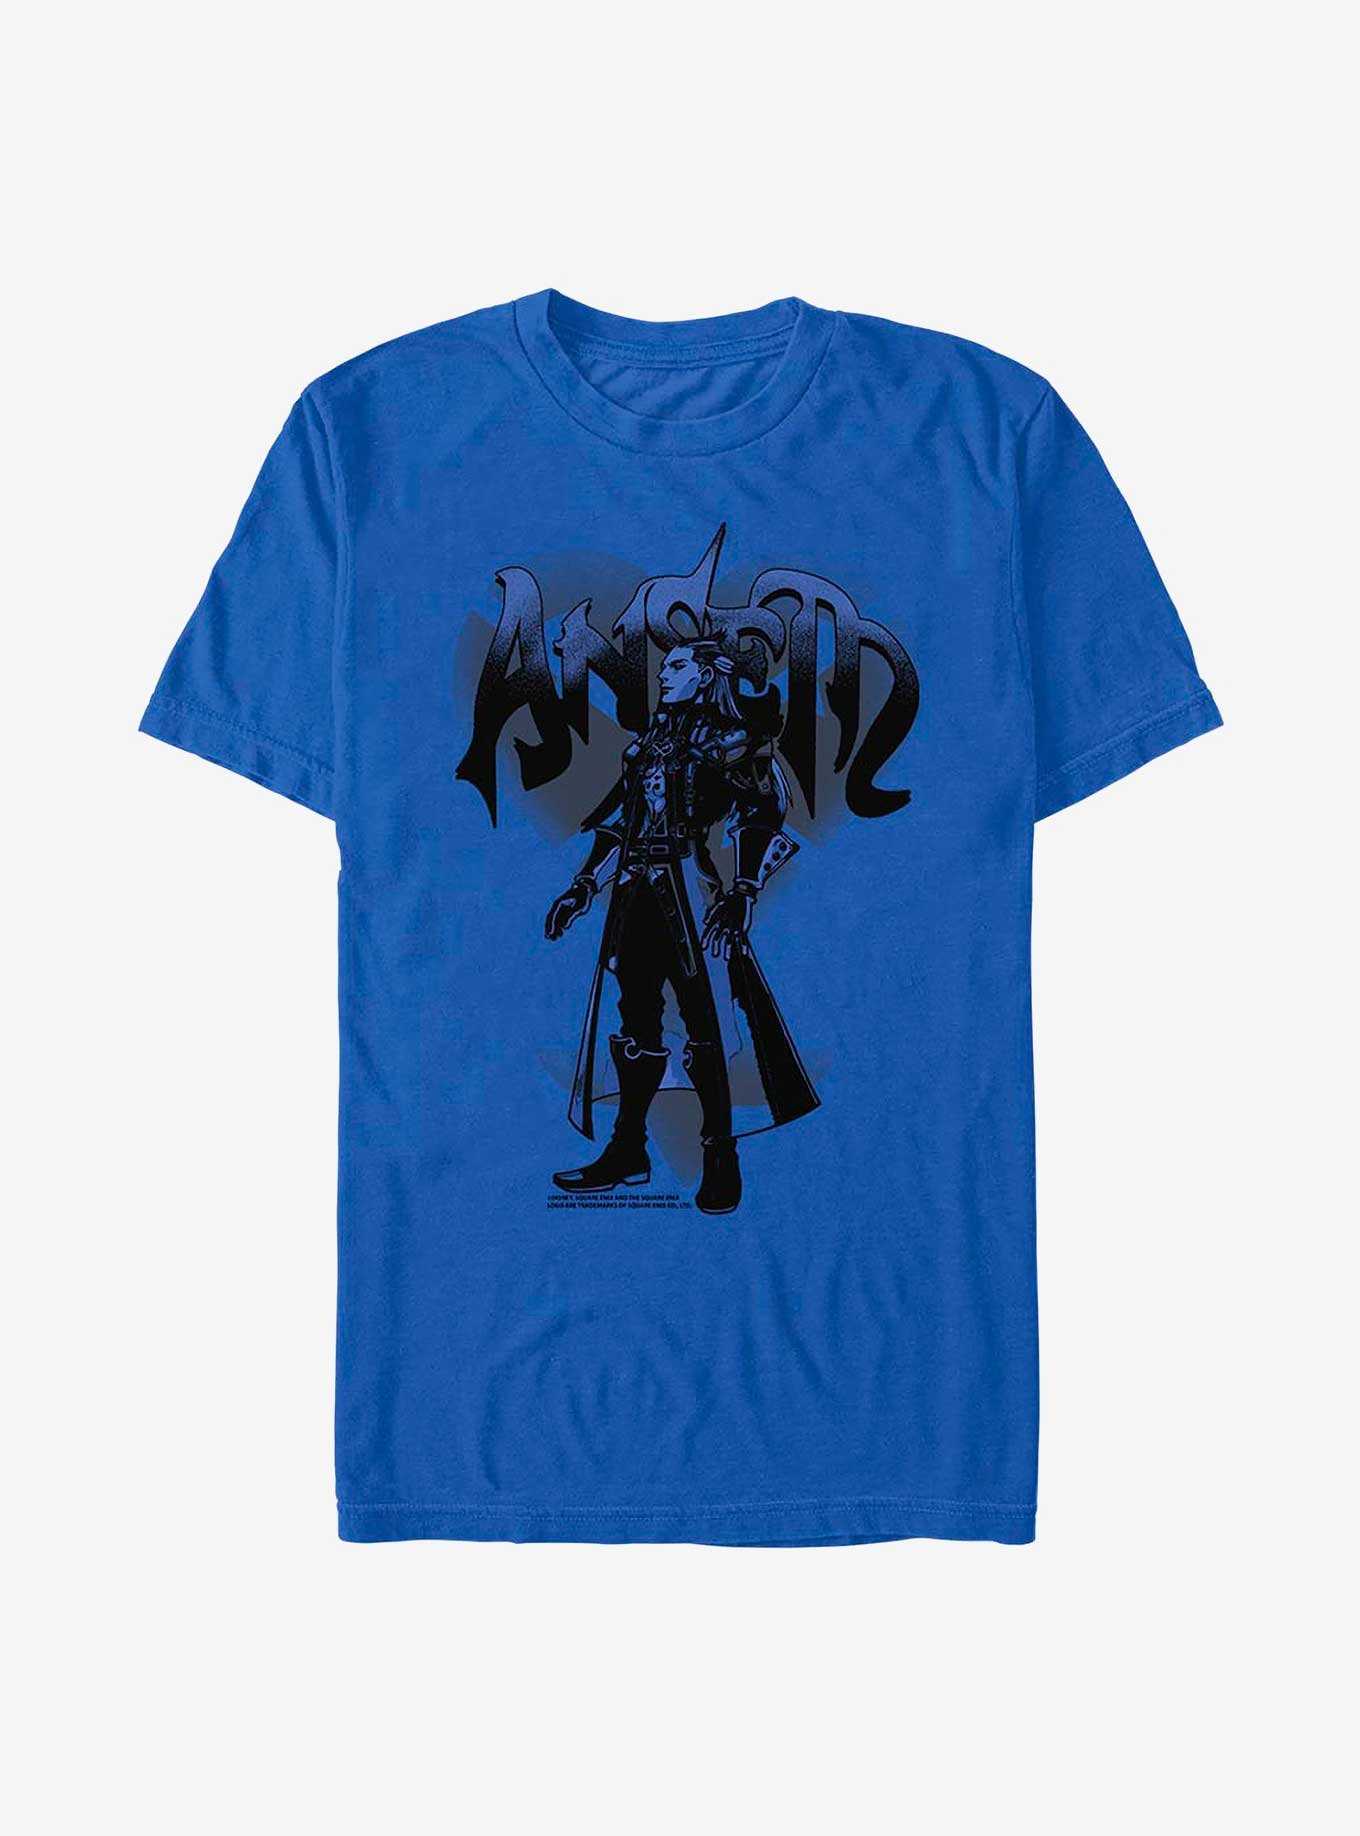 Disney Kingdom Hearts Ansem T-Shirt, , hi-res